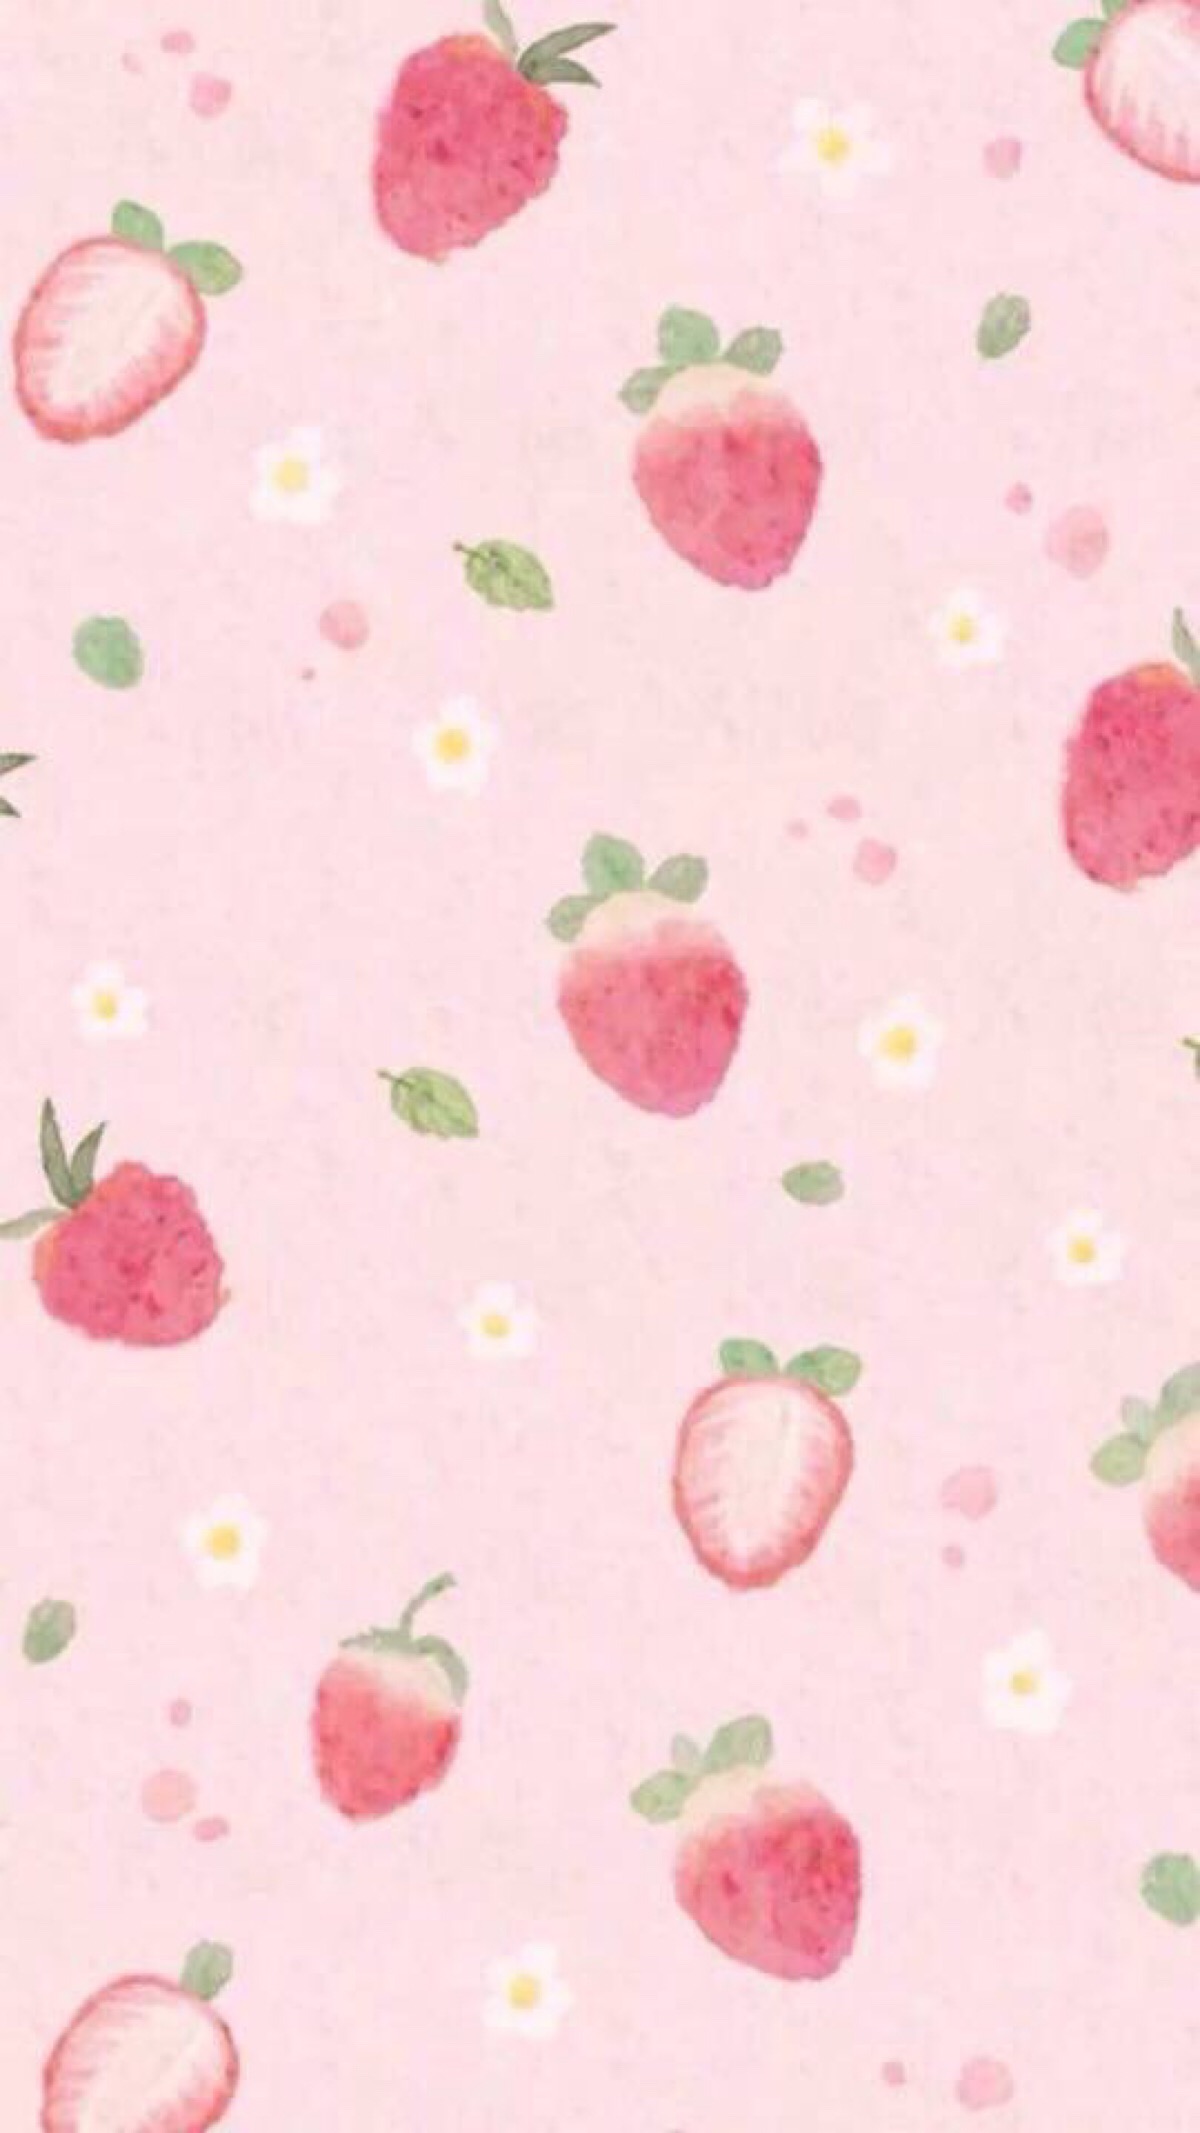 粉色少女心 草莓 可爱 平铺 锁屏 壁纸